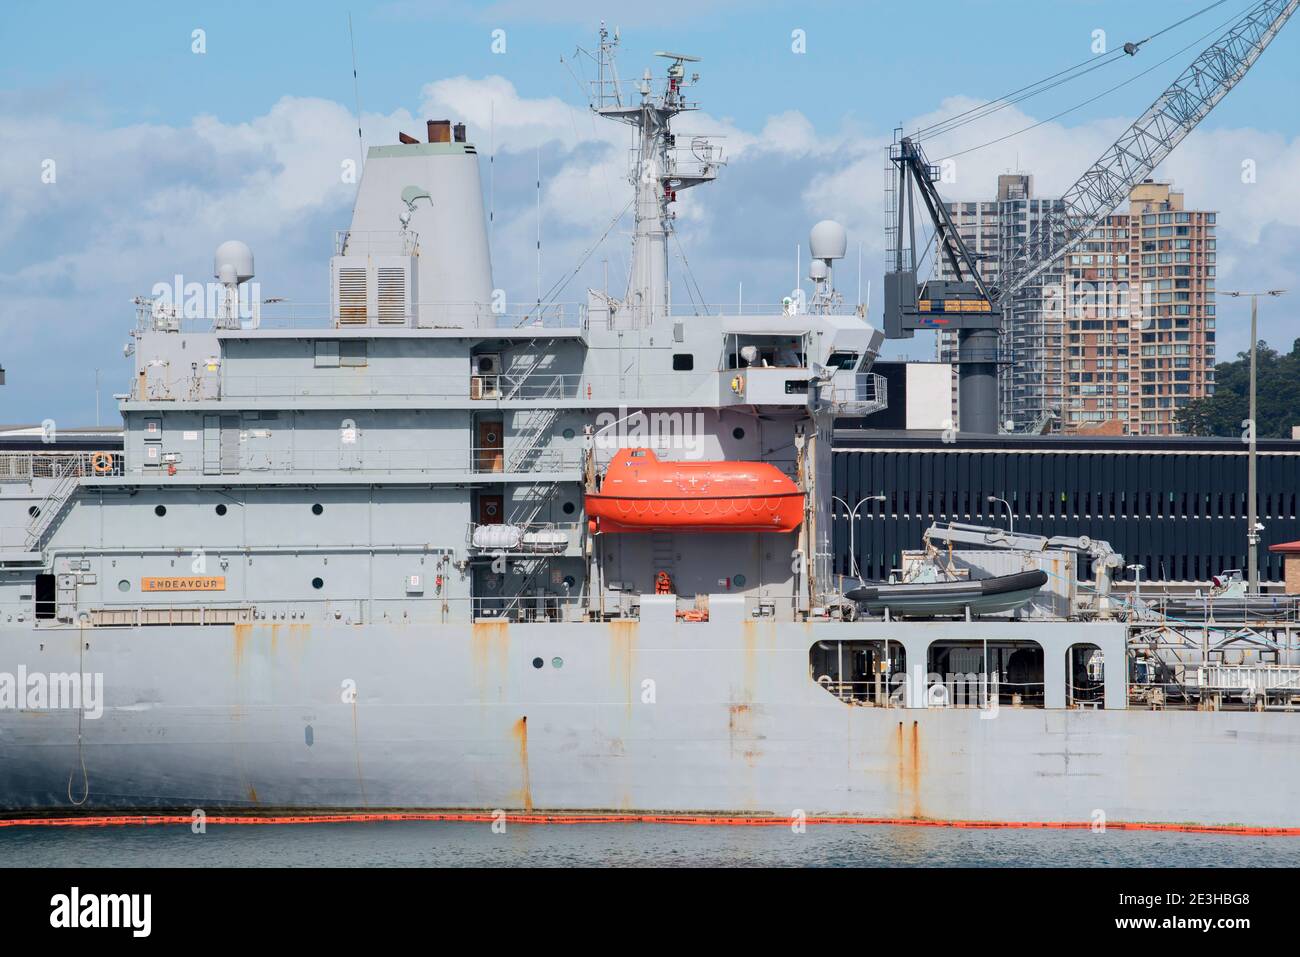 HMNZS Endeavour (A11), visto aquí en la Isla Jardín, era un buque de la flota en operación desde 1988 hasta 2017. El buque ha sido sustituido por HMNZS Aotearoa Foto de stock